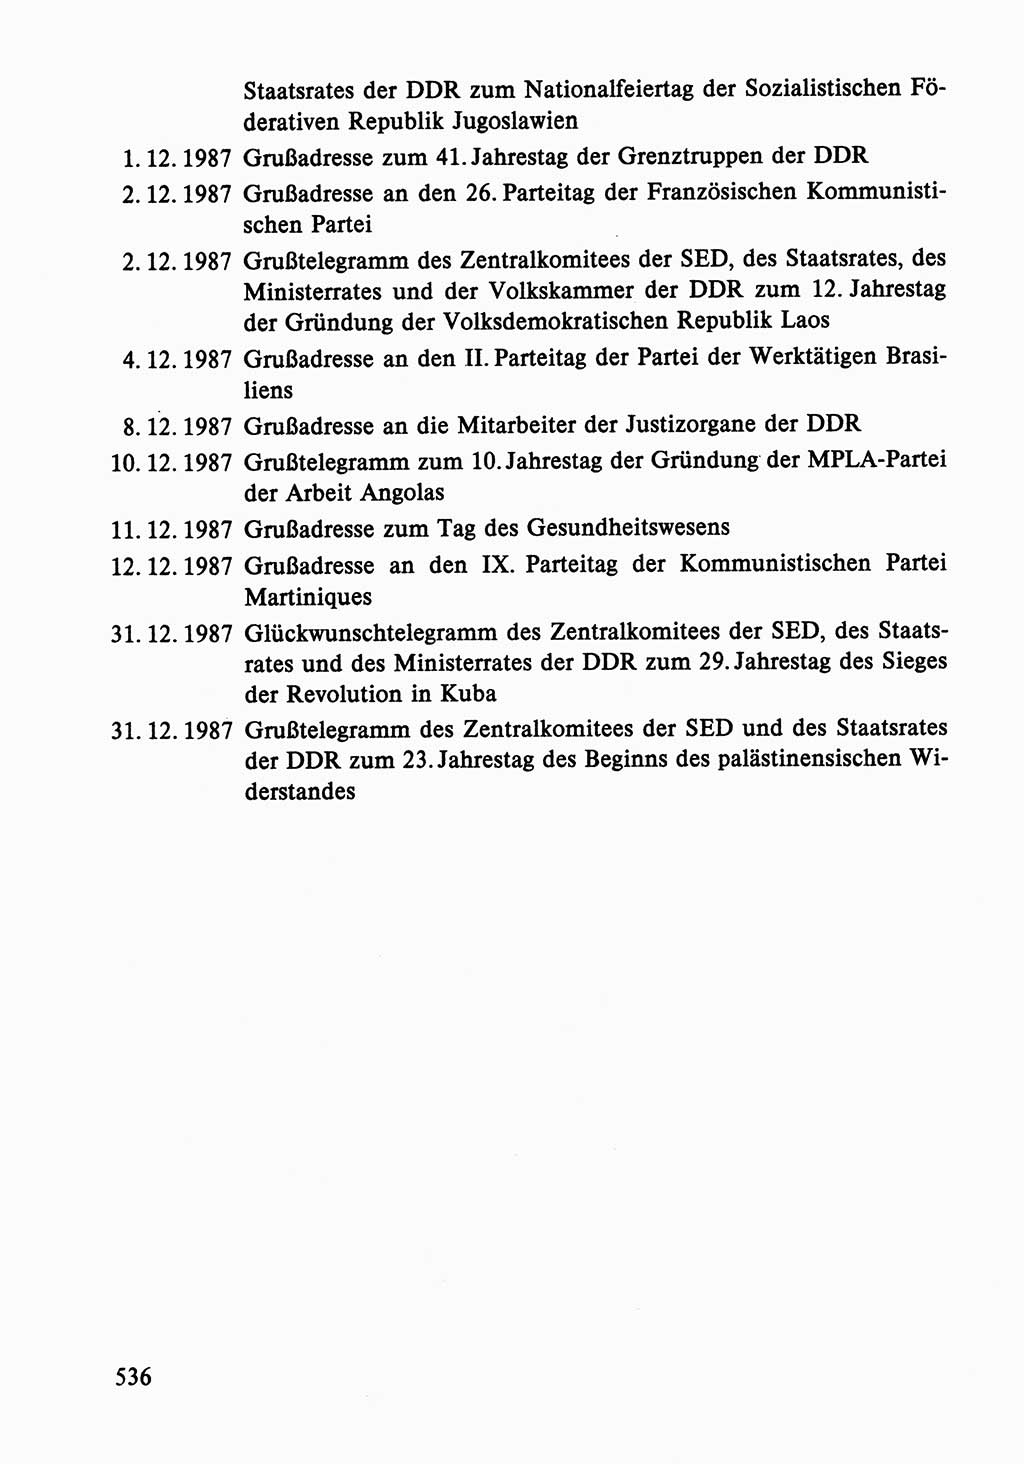 Dokumente der Sozialistischen Einheitspartei Deutschlands (SED) [Deutsche Demokratische Republik (DDR)] 1986-1987, Seite 536 (Dok. SED DDR 1986-1987, S. 536)